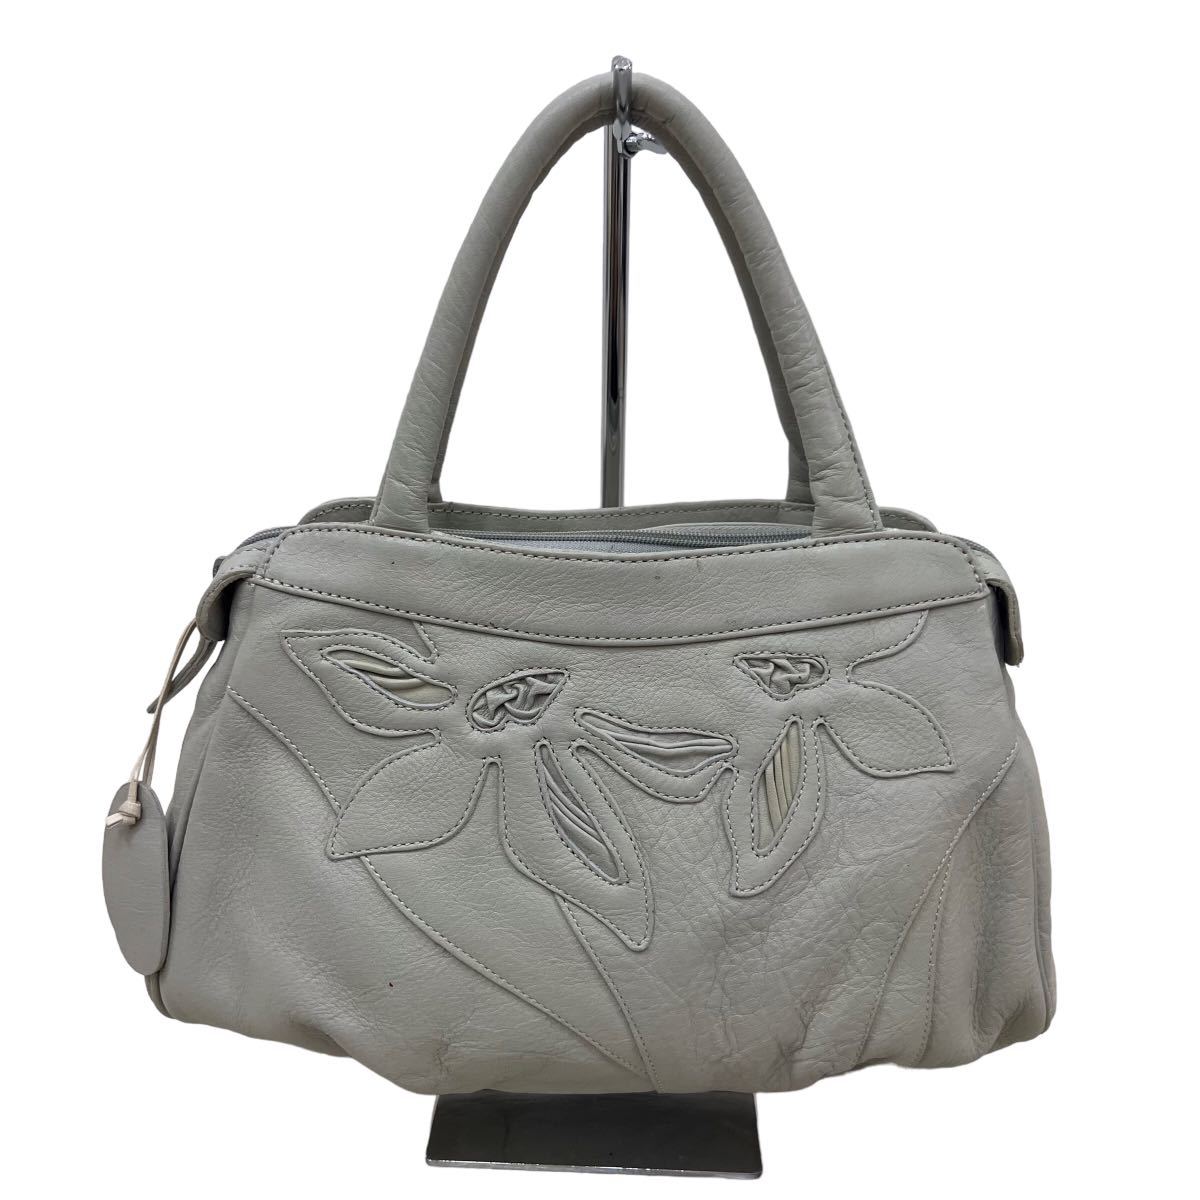 D490 IBIZA イビサ イビザ ハンドバッグ 手持ち 手提げ かばん カバン 鞄 バッグ BAG グレー系 レディース 実寸参考の画像1